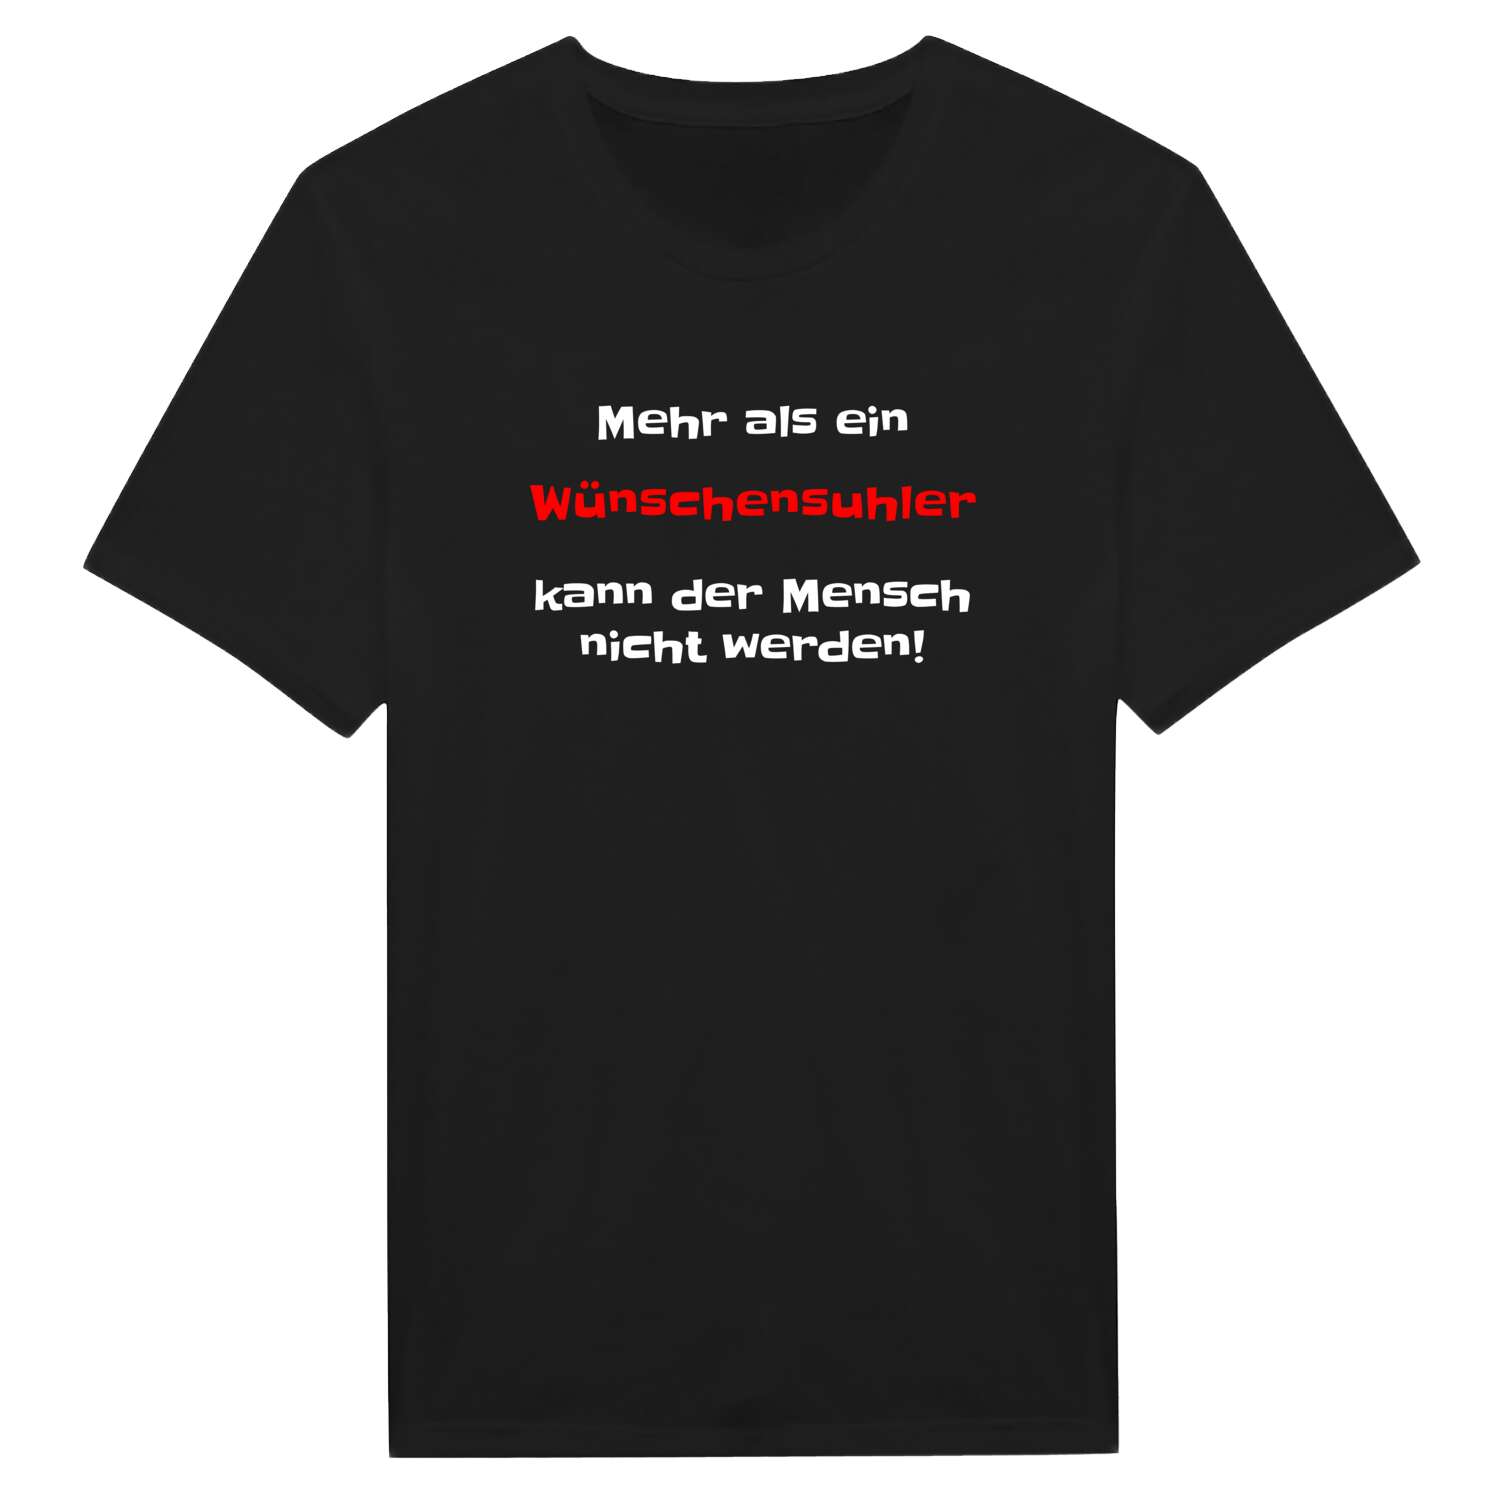 Wünschensuhl T-Shirt »Mehr als ein«